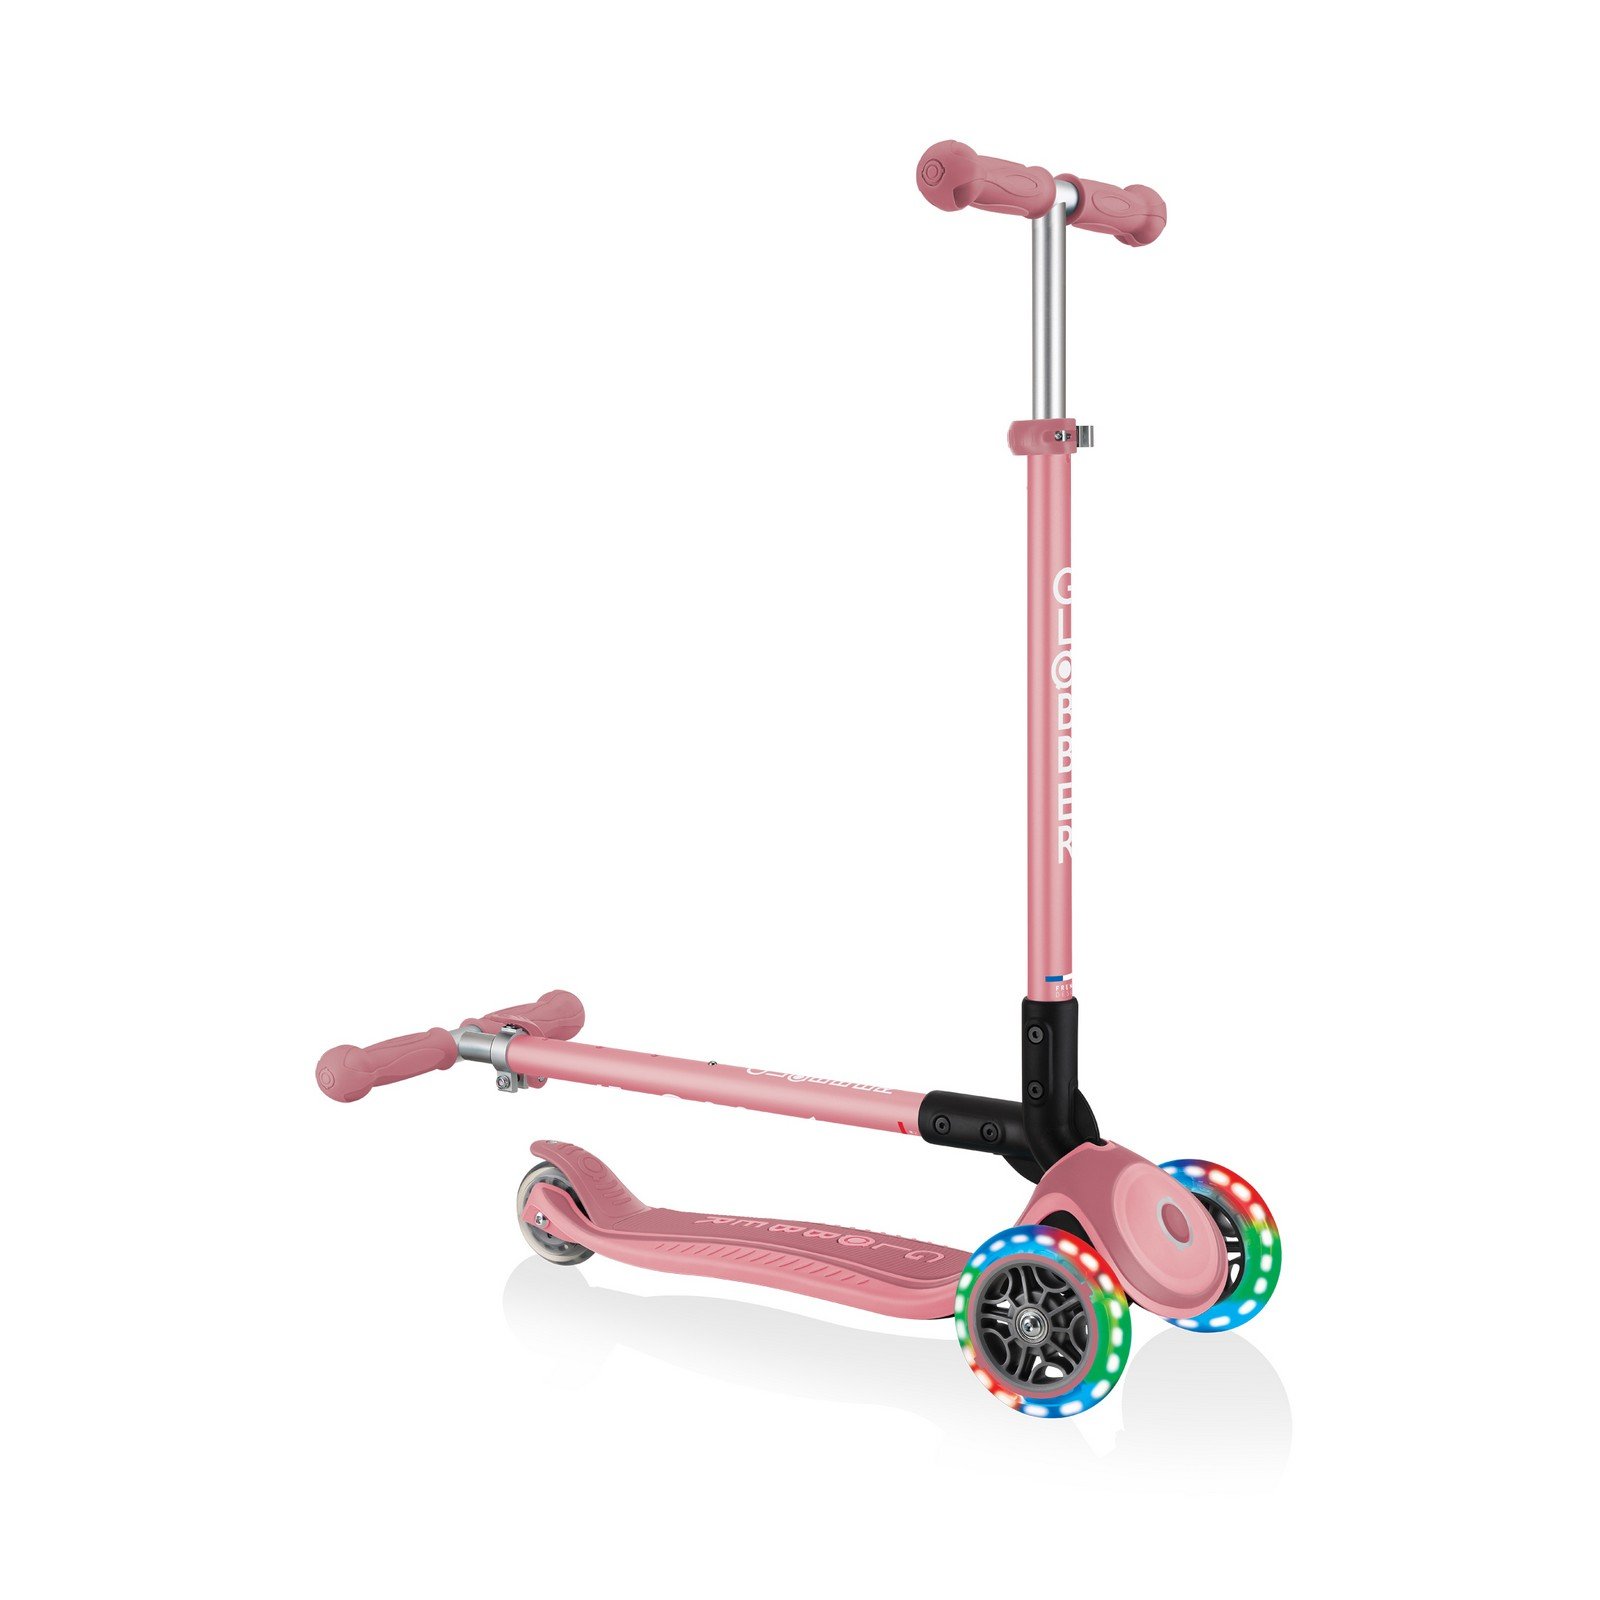 Самокат Globber Primo foldable plus lights, колеса з підсвічуванням, пастельно-рожевий (439-210) - фото 8